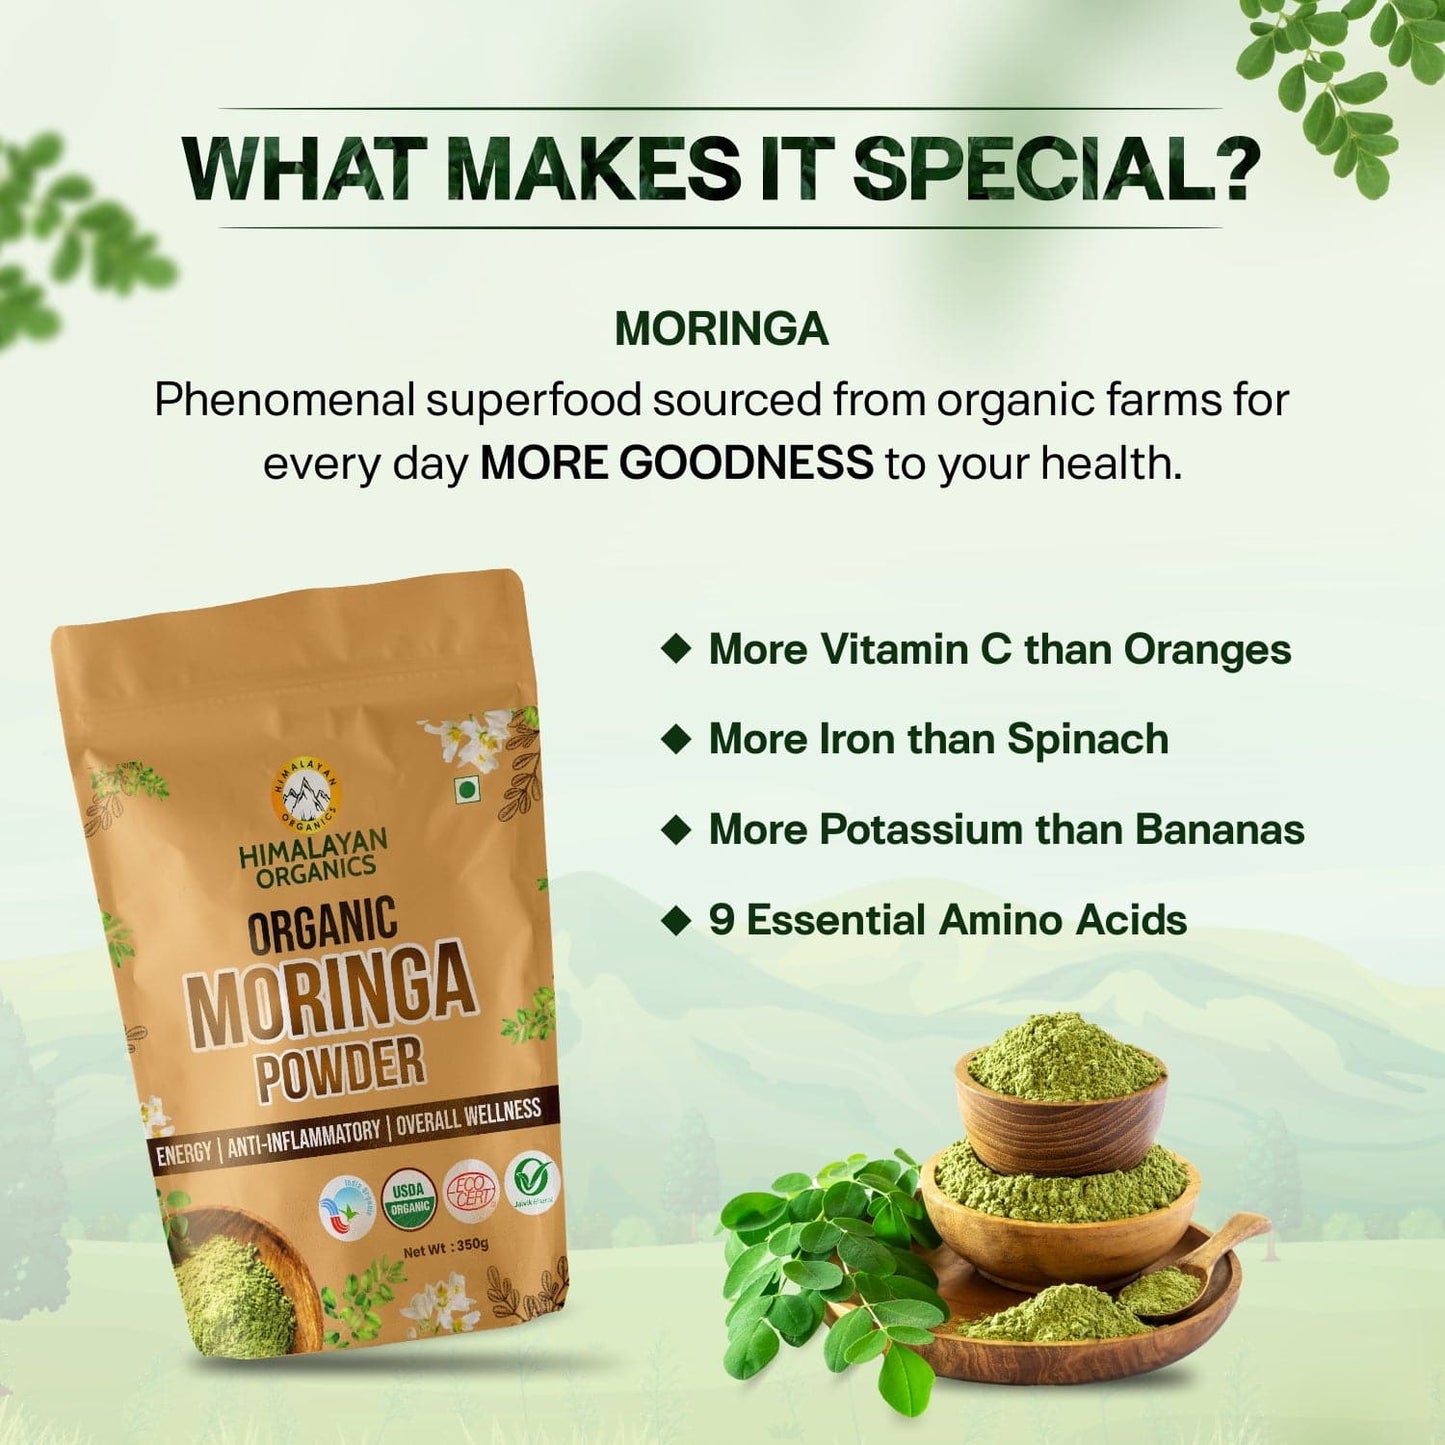 Himalayan Organics Certified Organic Moringa Powder (Moringa Oleifera) 350g